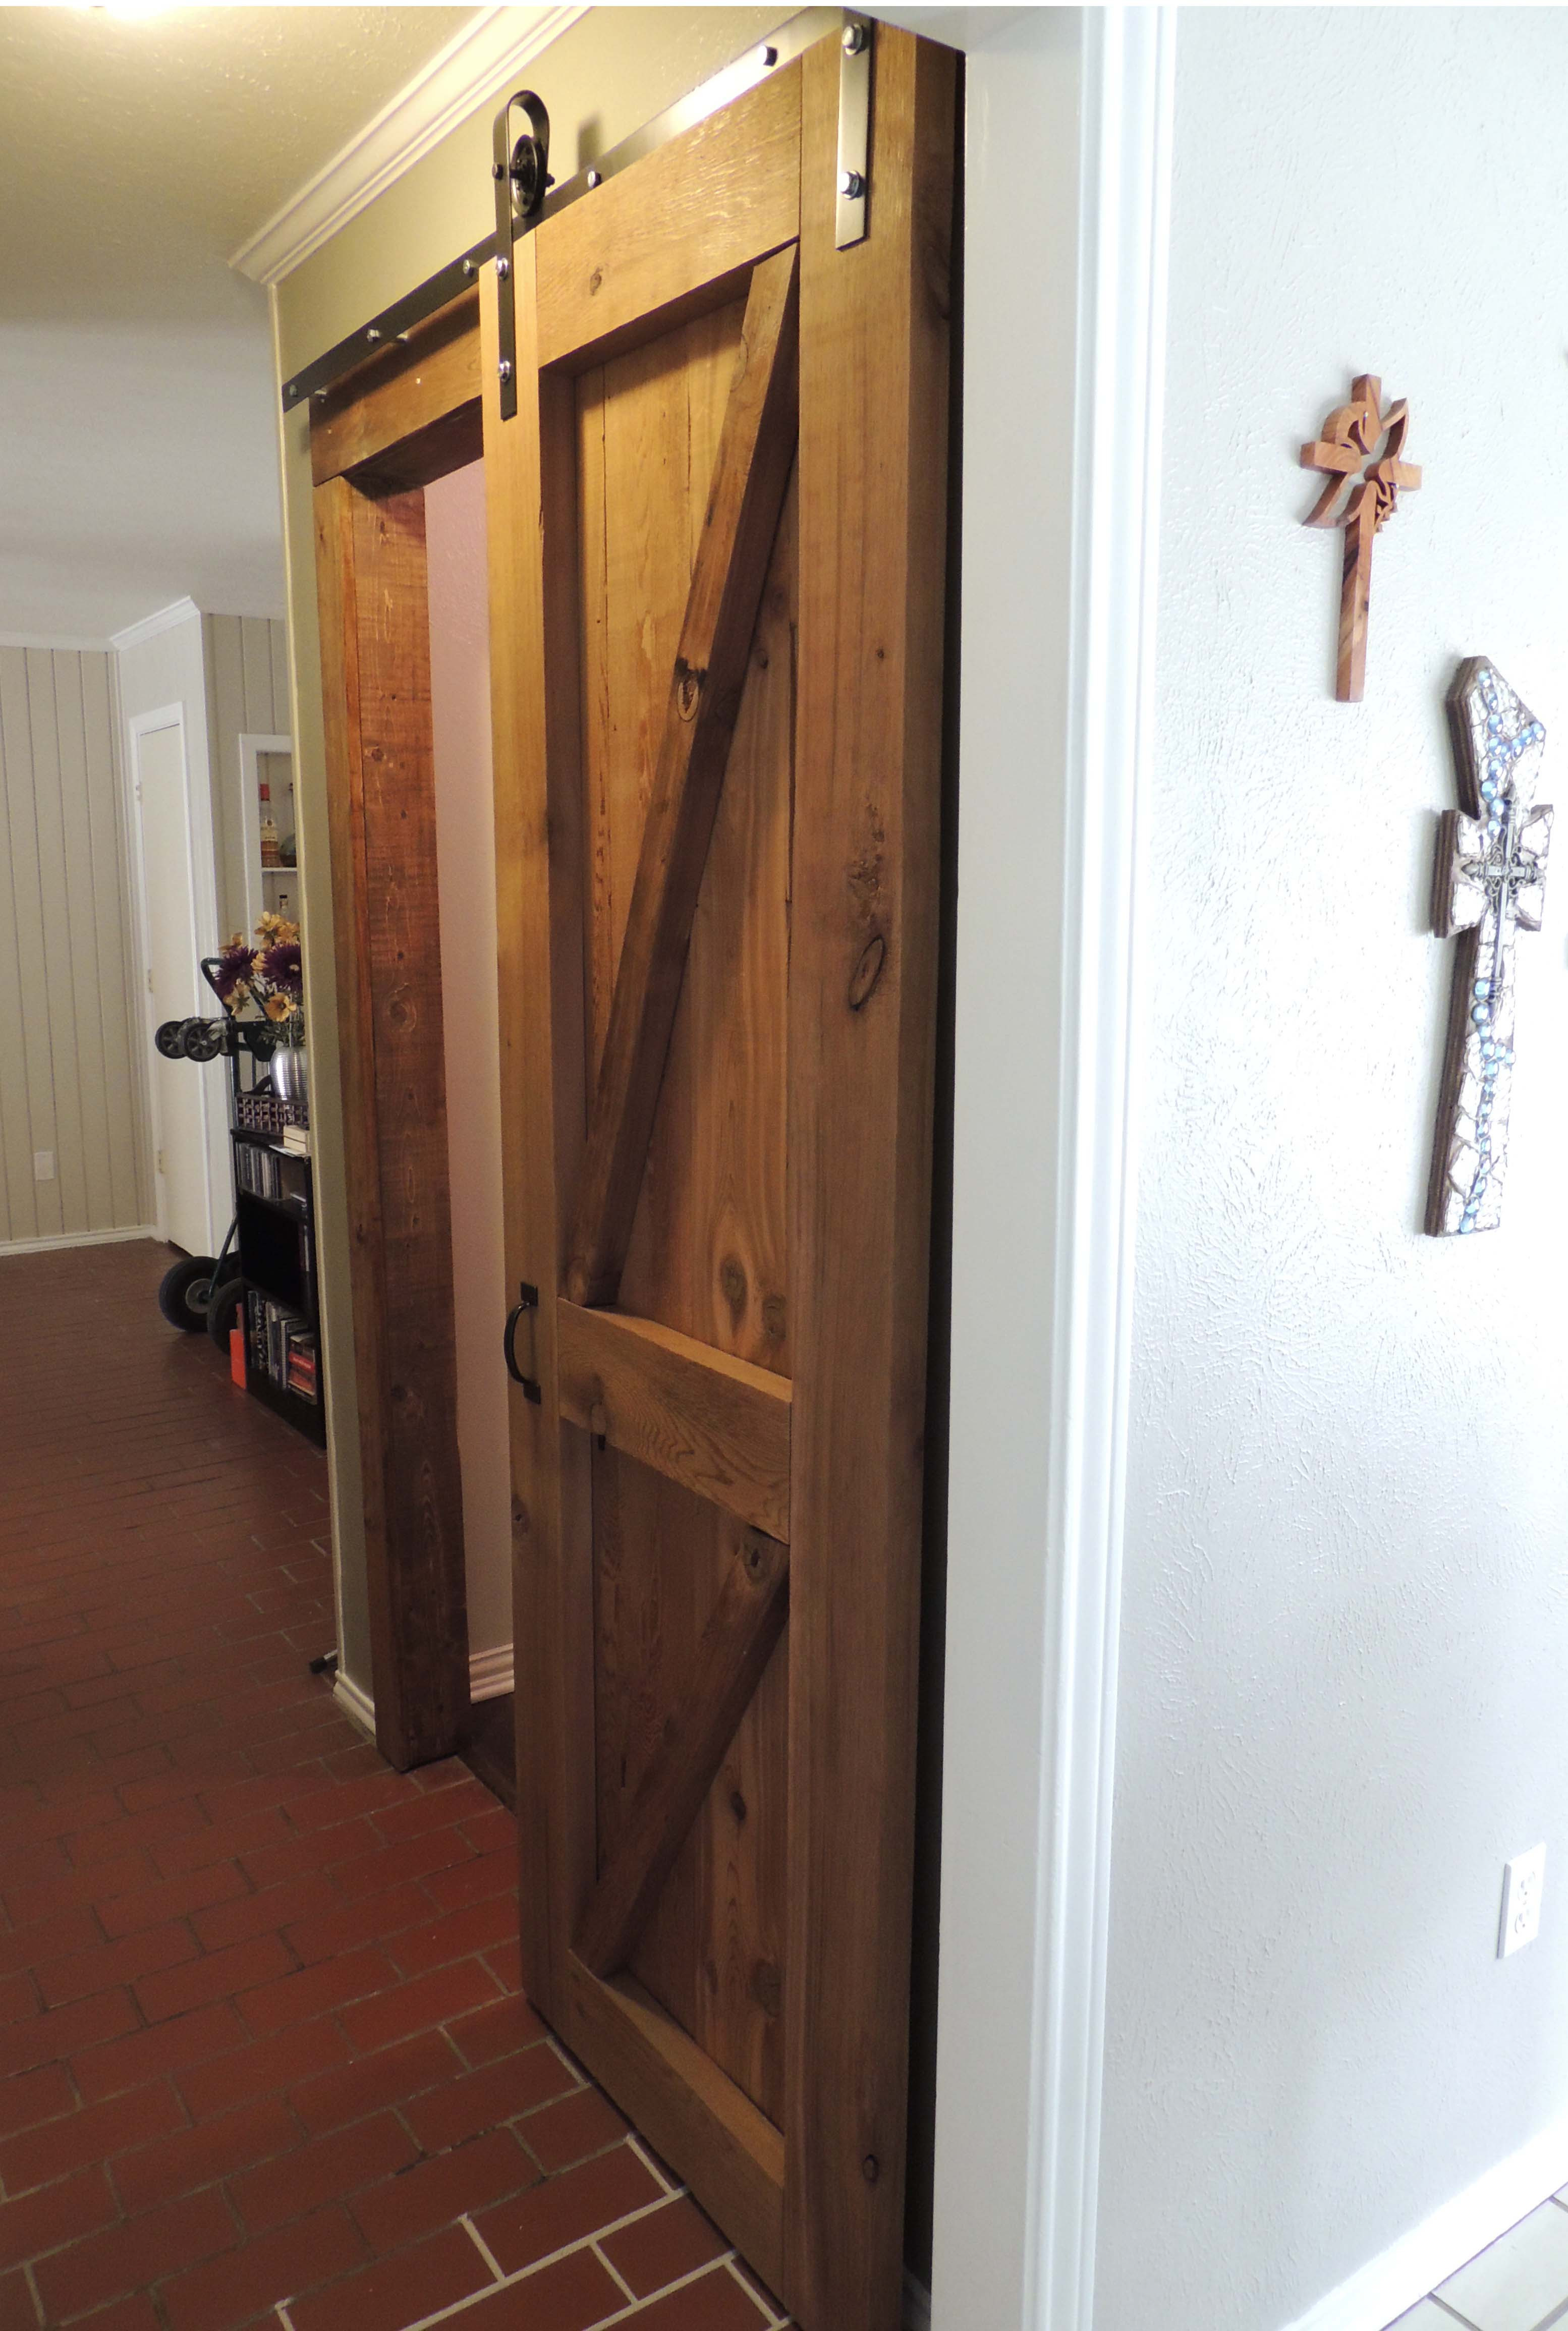 Best ideas about DIY Door Frame
. Save or Pin barn door Now.